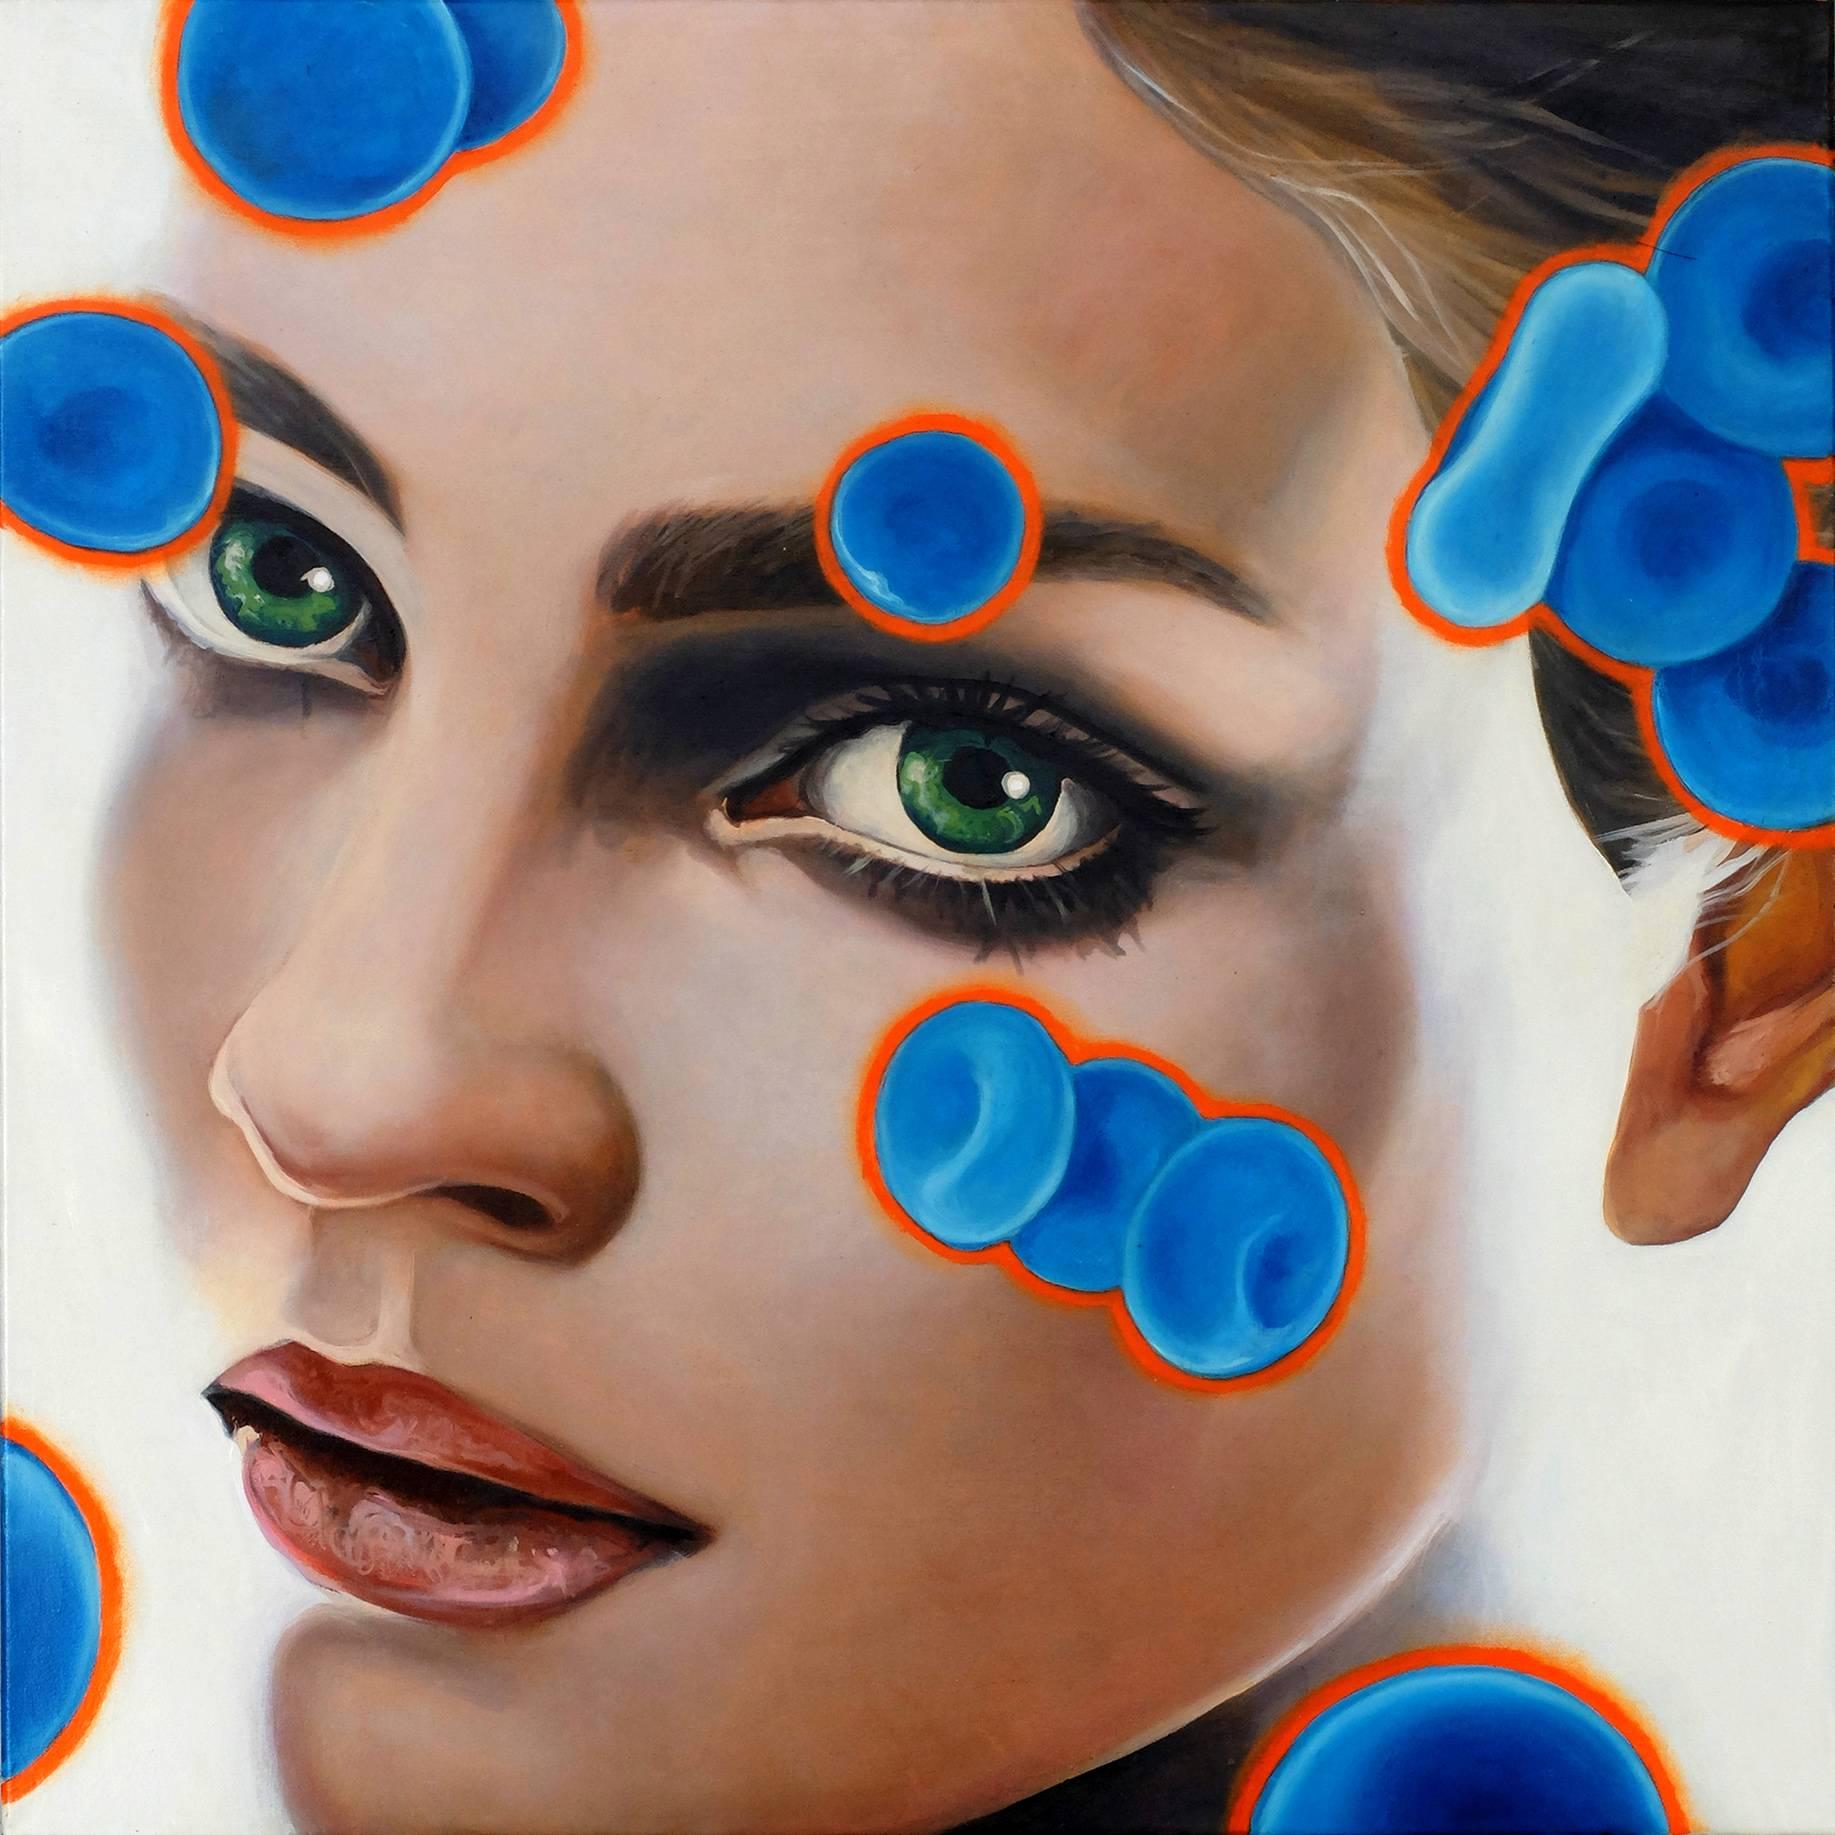 Manzur Kargar Portrait Painting - Blue Blood Cells 6